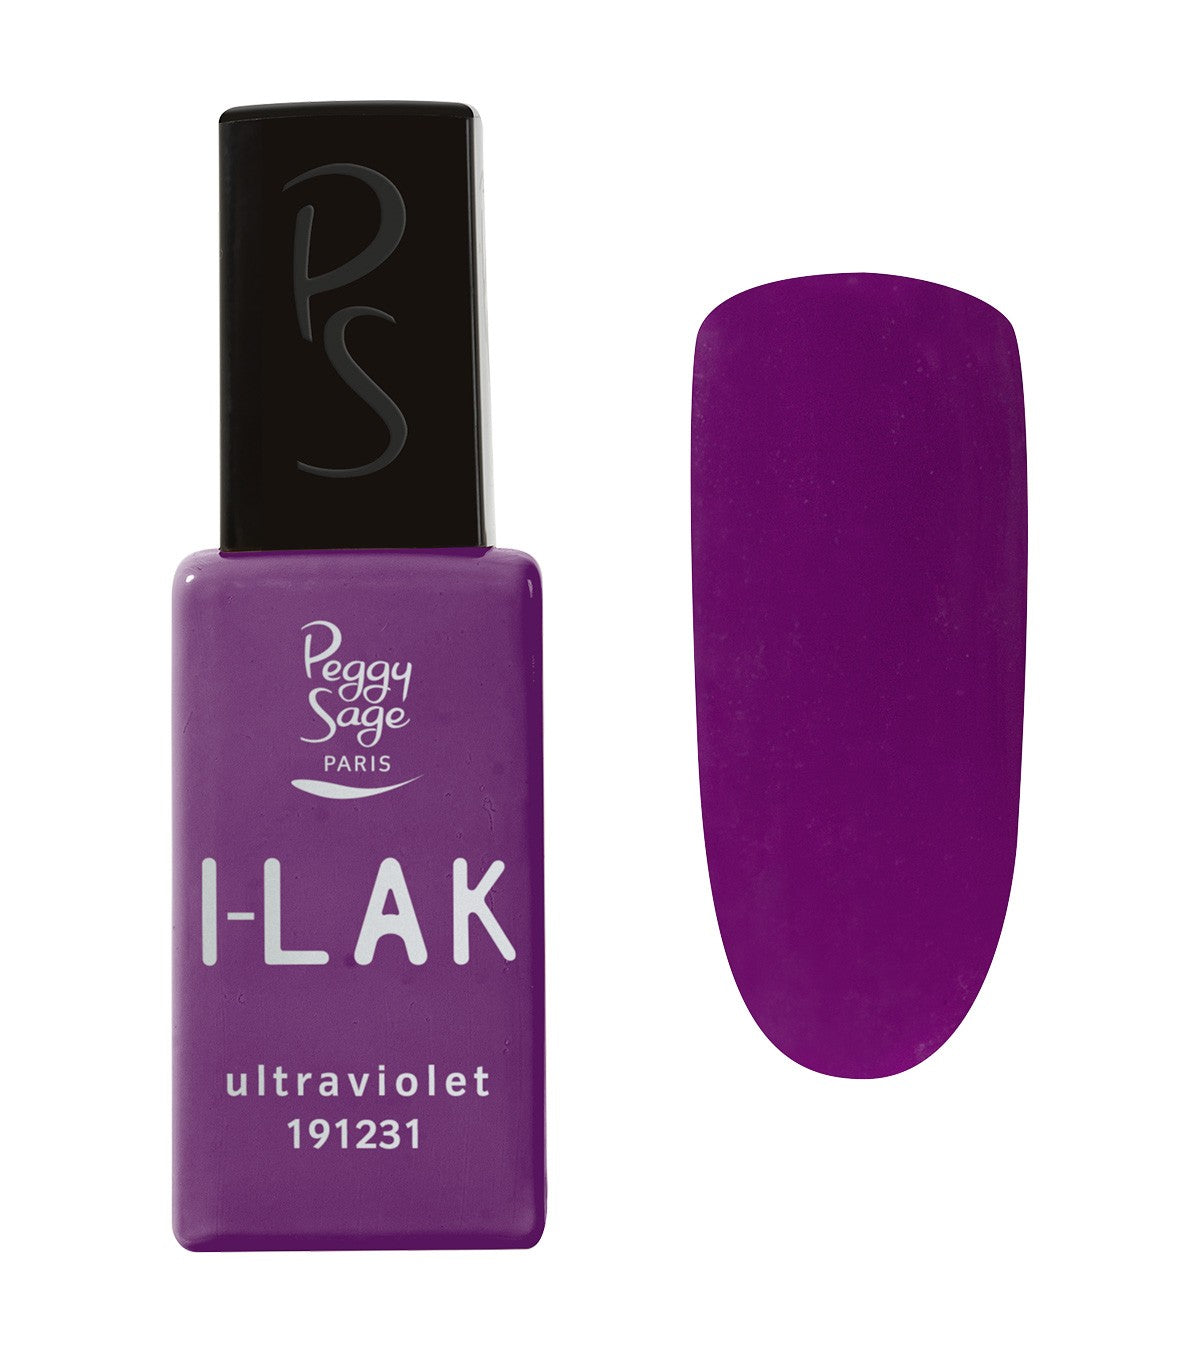 I-LAK Ultraviolet Ref 191231